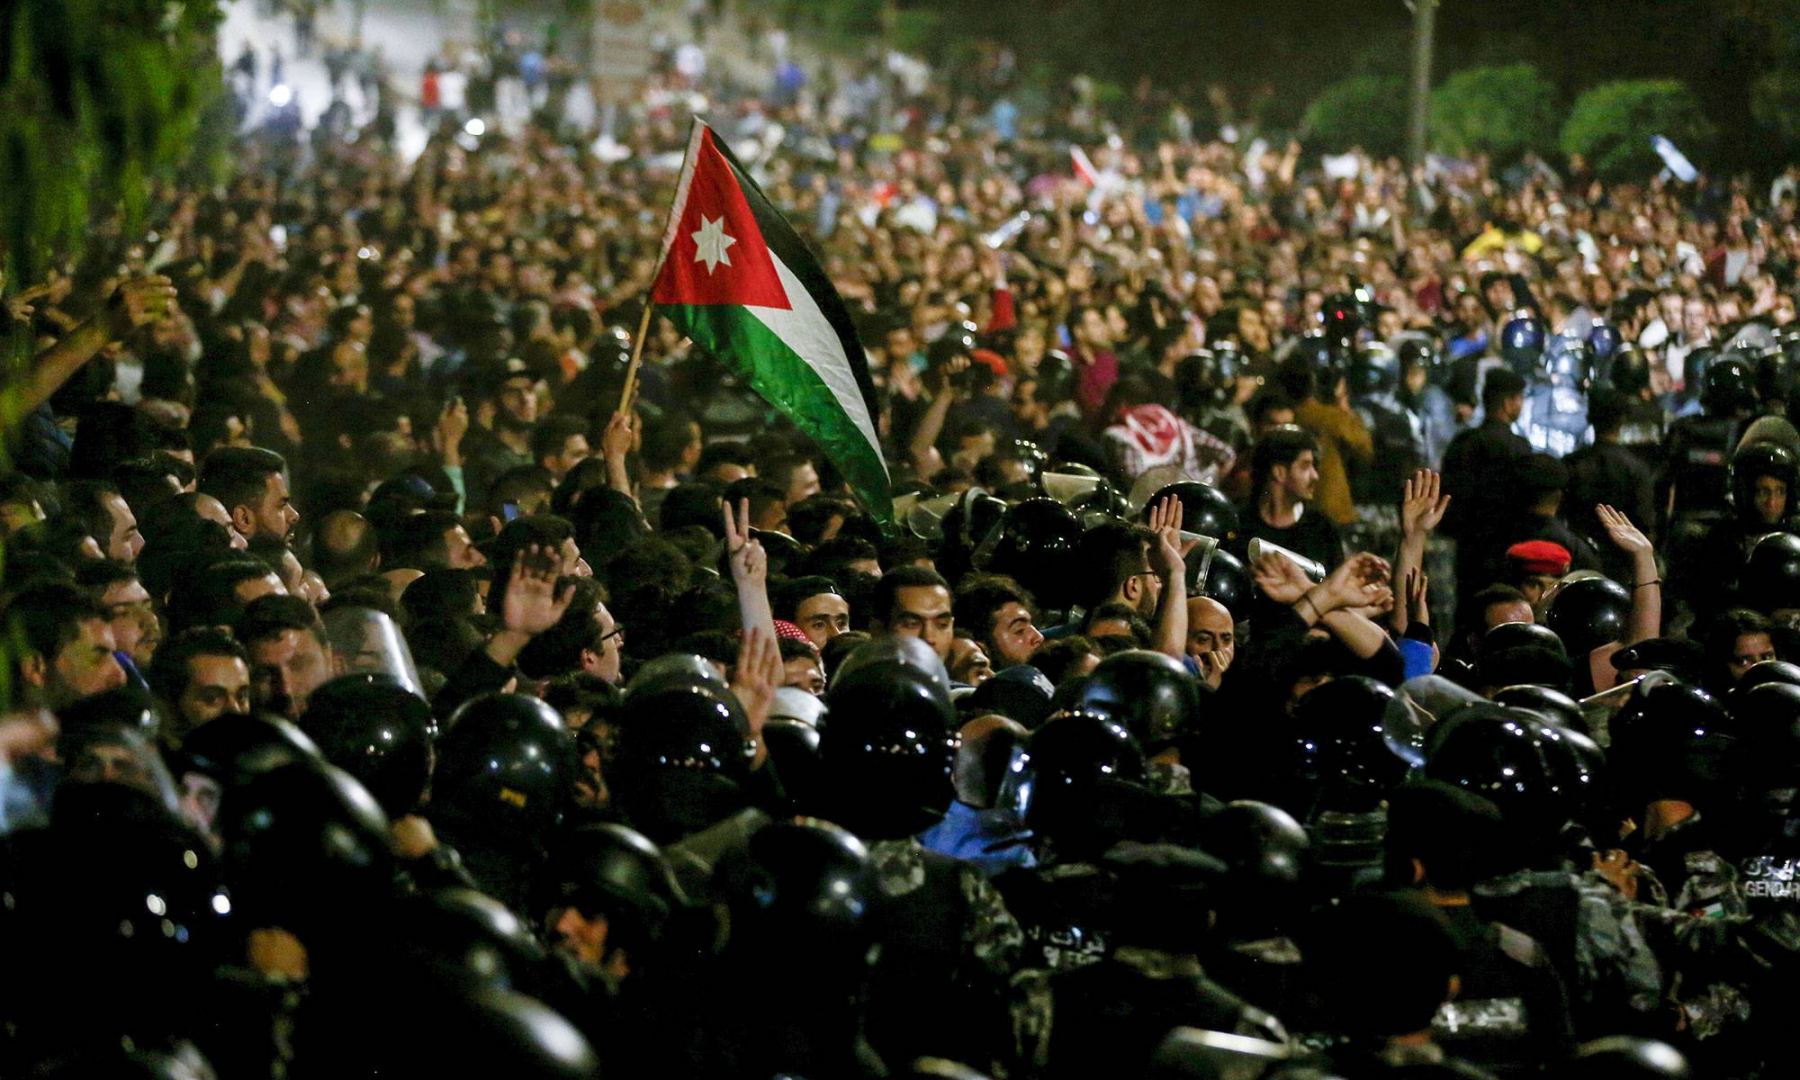 Иорданские силовики блокировали пригород Аммана из-за акций протеста